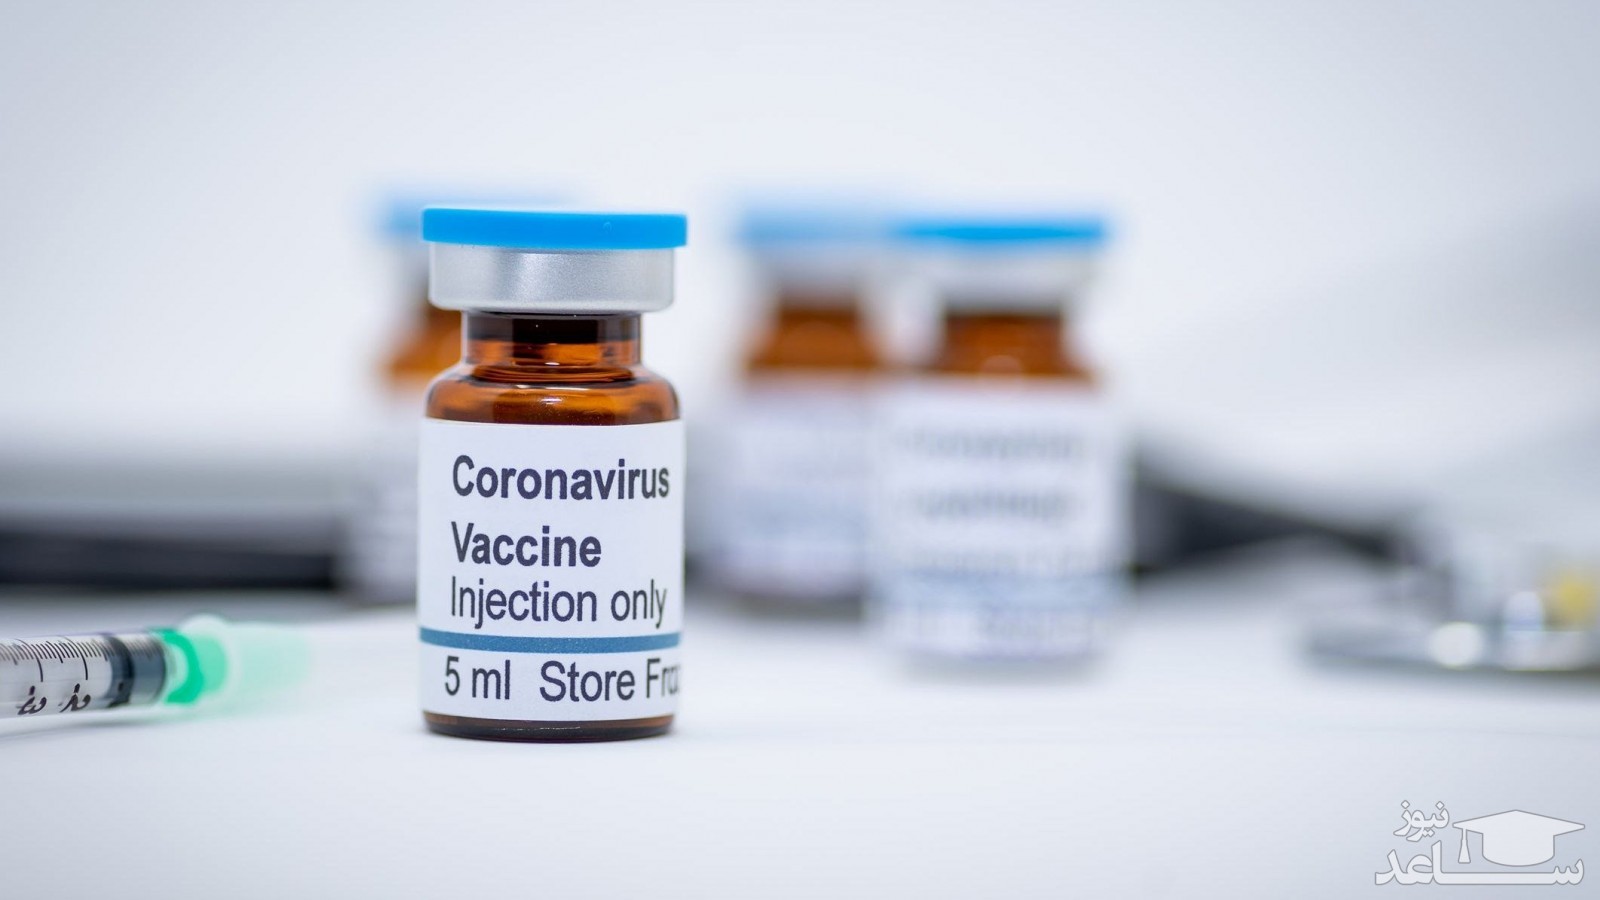 تولید واکسن کرونا در ۳ شرکت خصوصی/حمایت ۱۰۰ میلیاردی از ۹۰ محصول حوزه سلامت